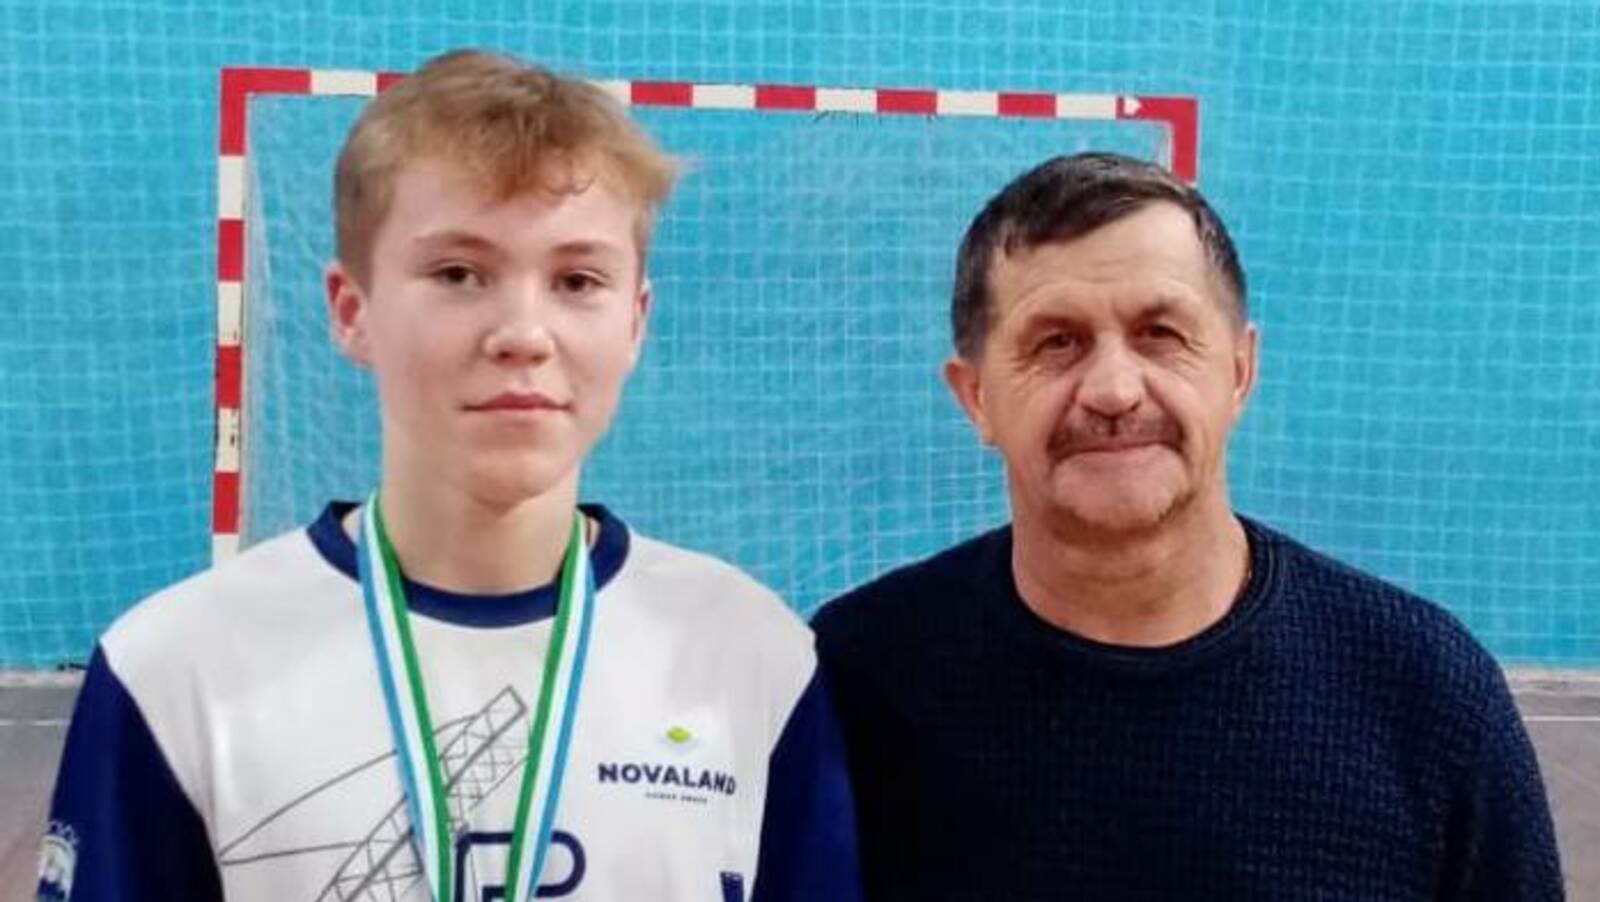 Житель села Воскресенского Мелеузовского района поедет на первенство России по волейболу